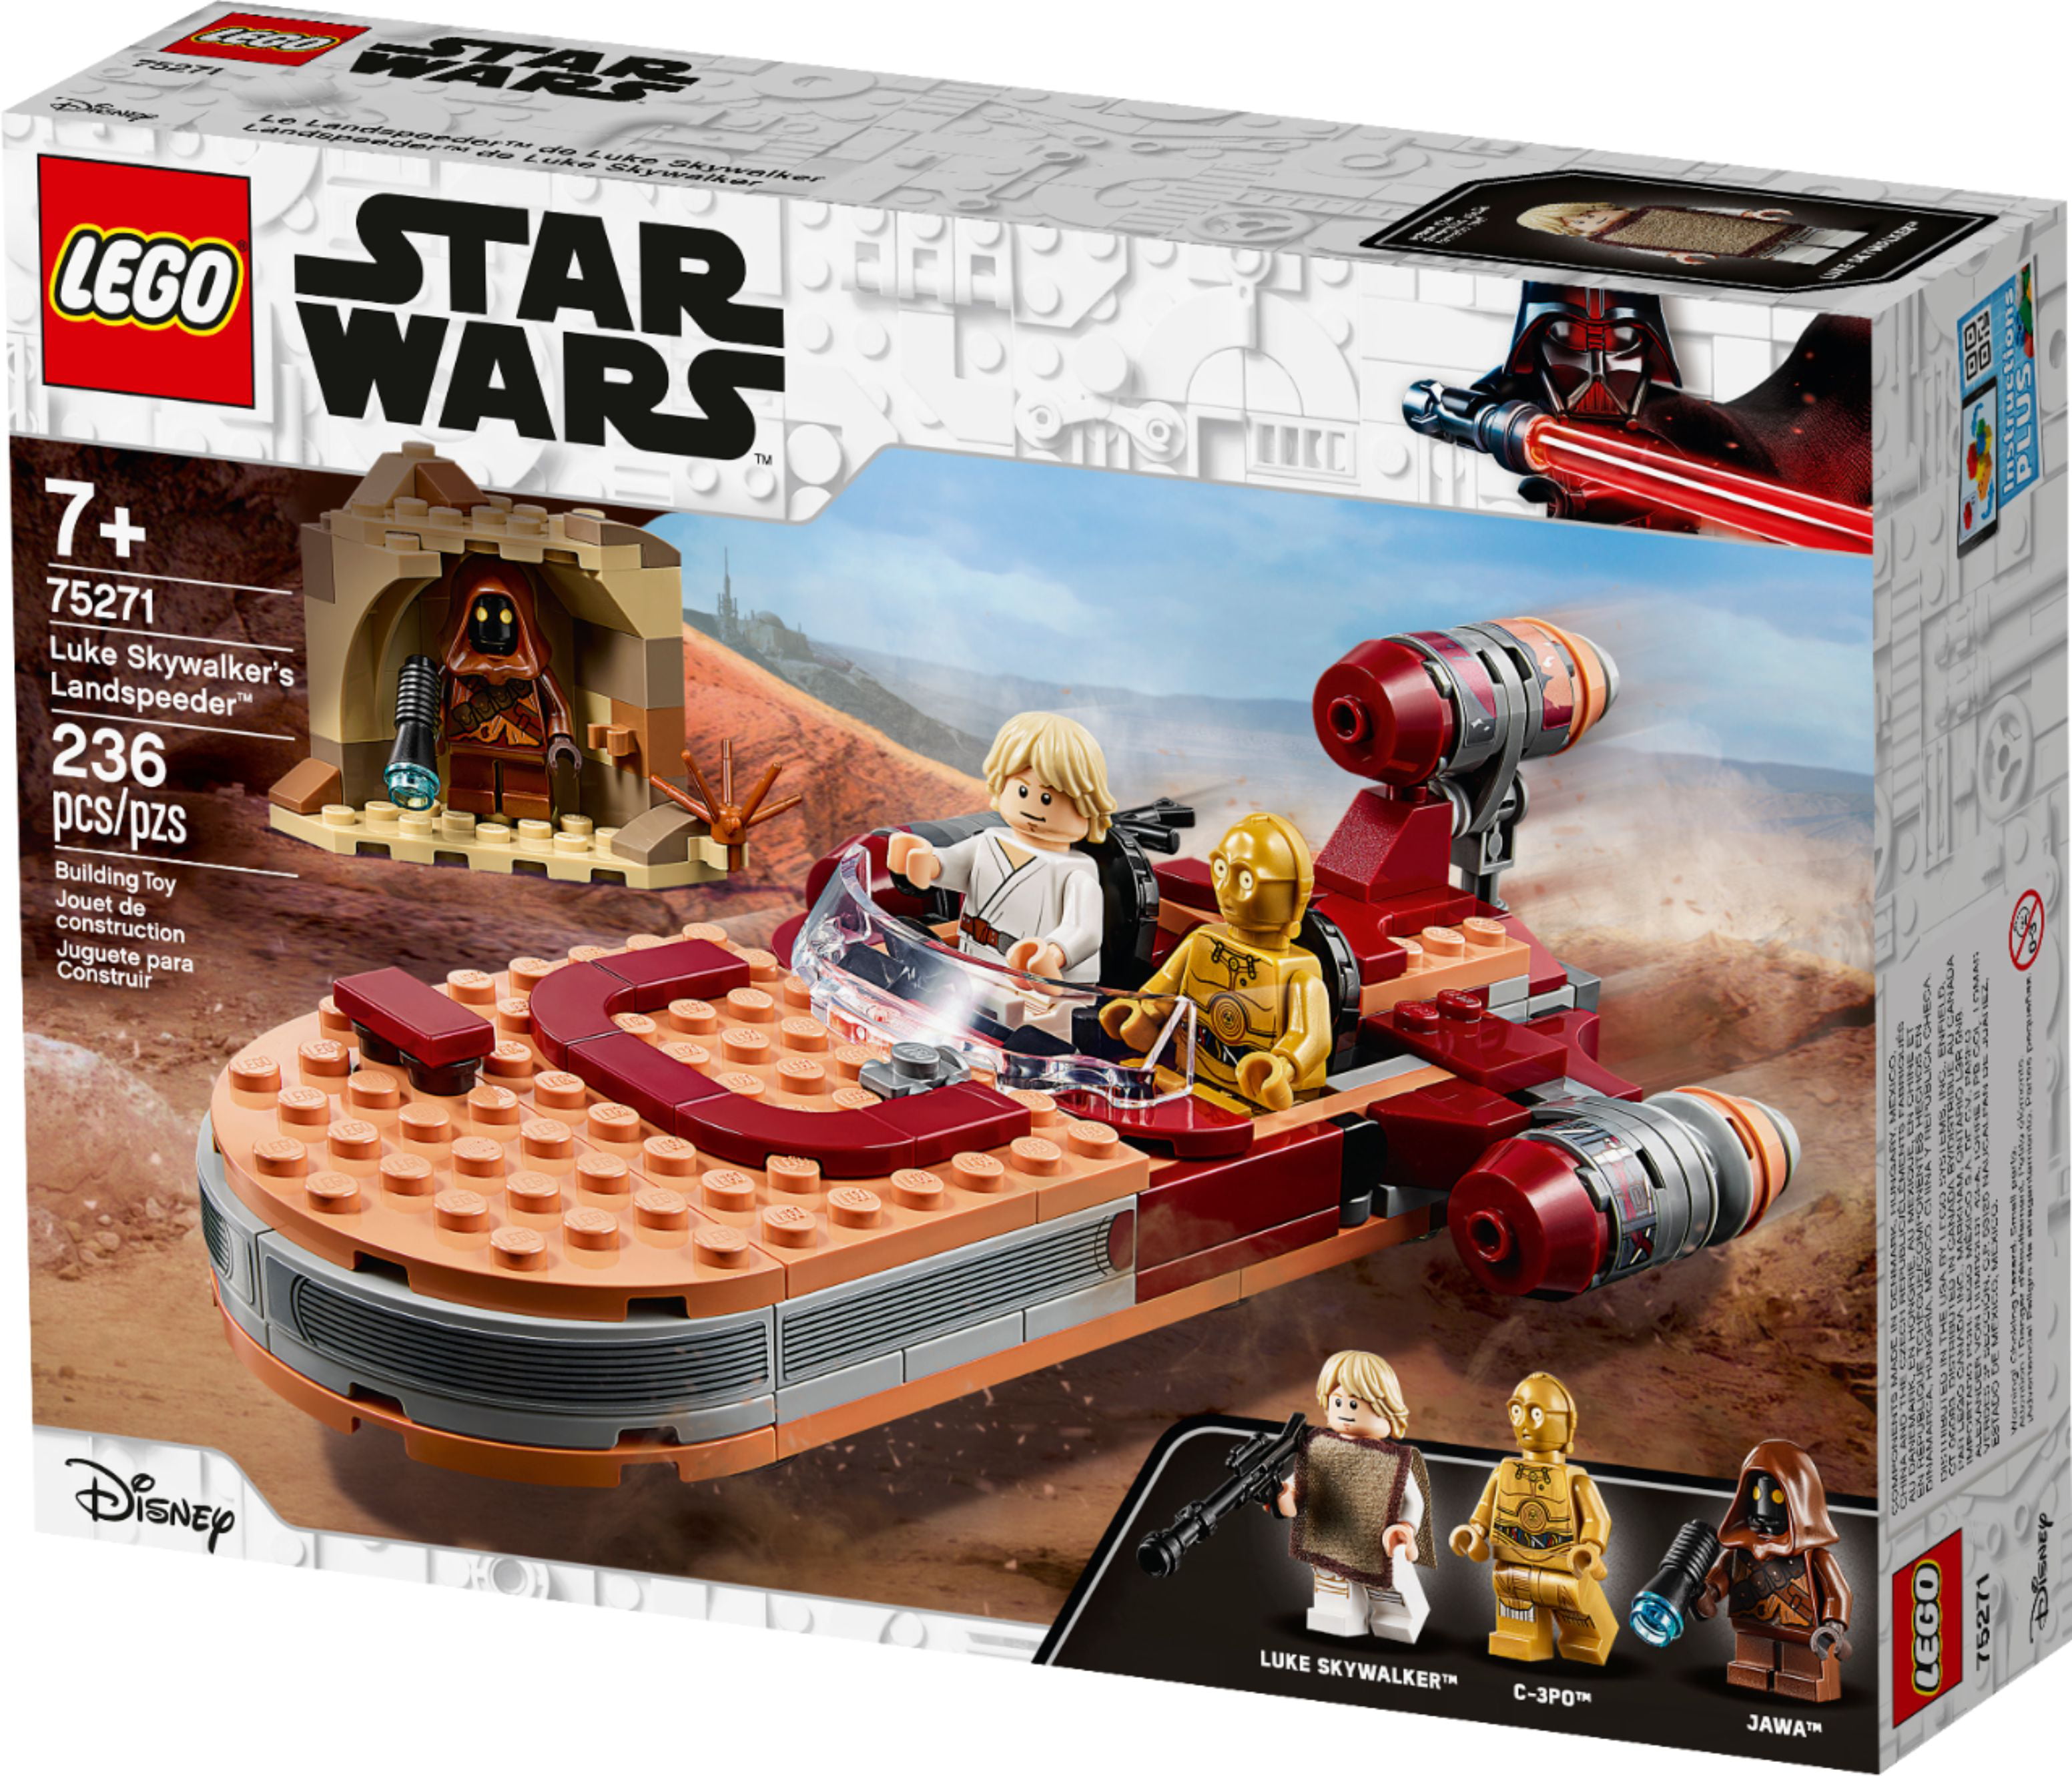 mangfoldighed petulance Beskæftiget LEGO - Star Wars Luke Skywalker's X-34 Landspeeder 75271 - Walmart.com